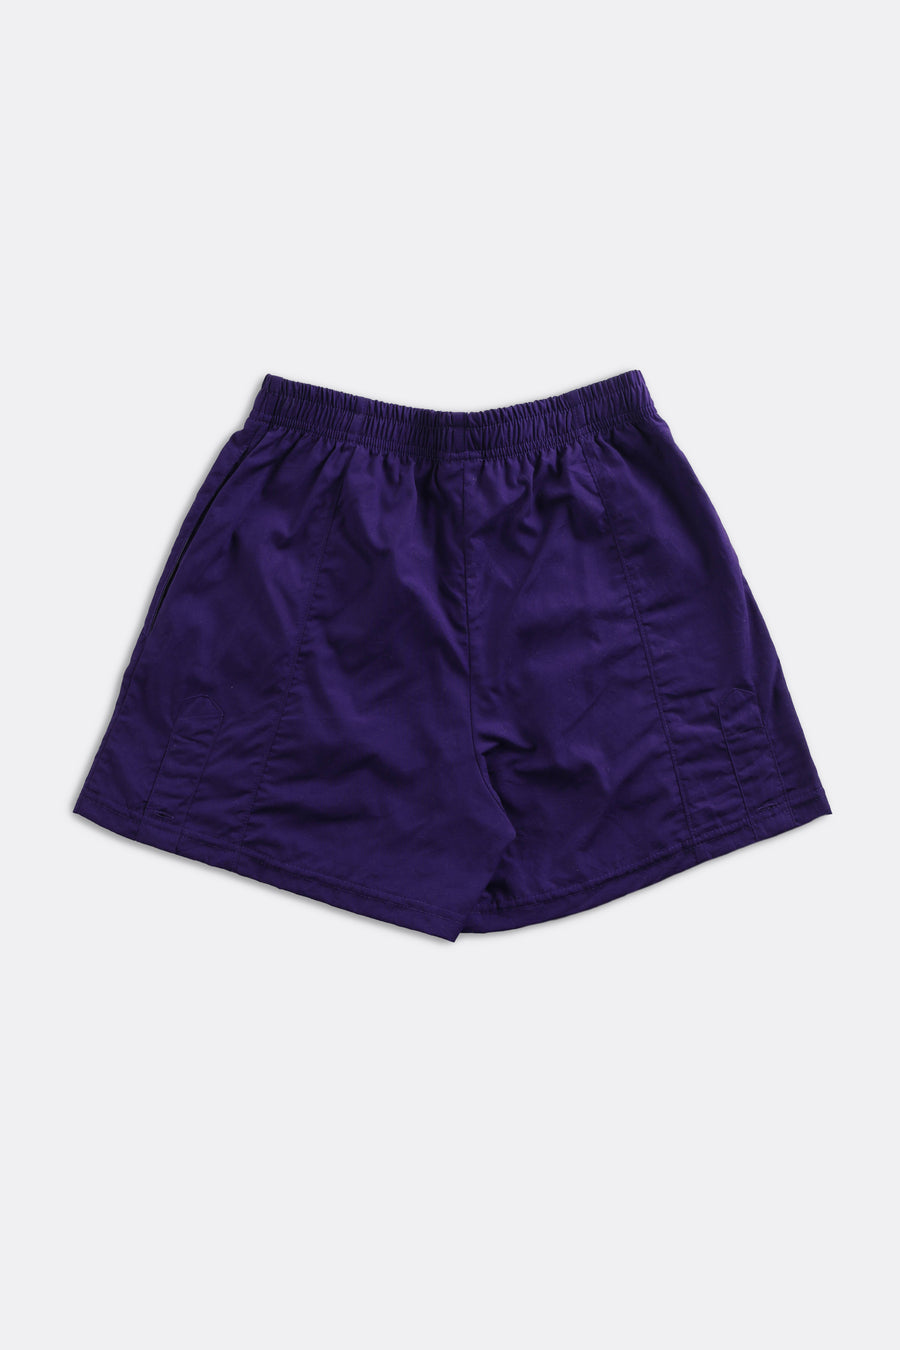 Unisex Rework Polo Oxford Boxer Shorts - Women-XS, Men-XXS